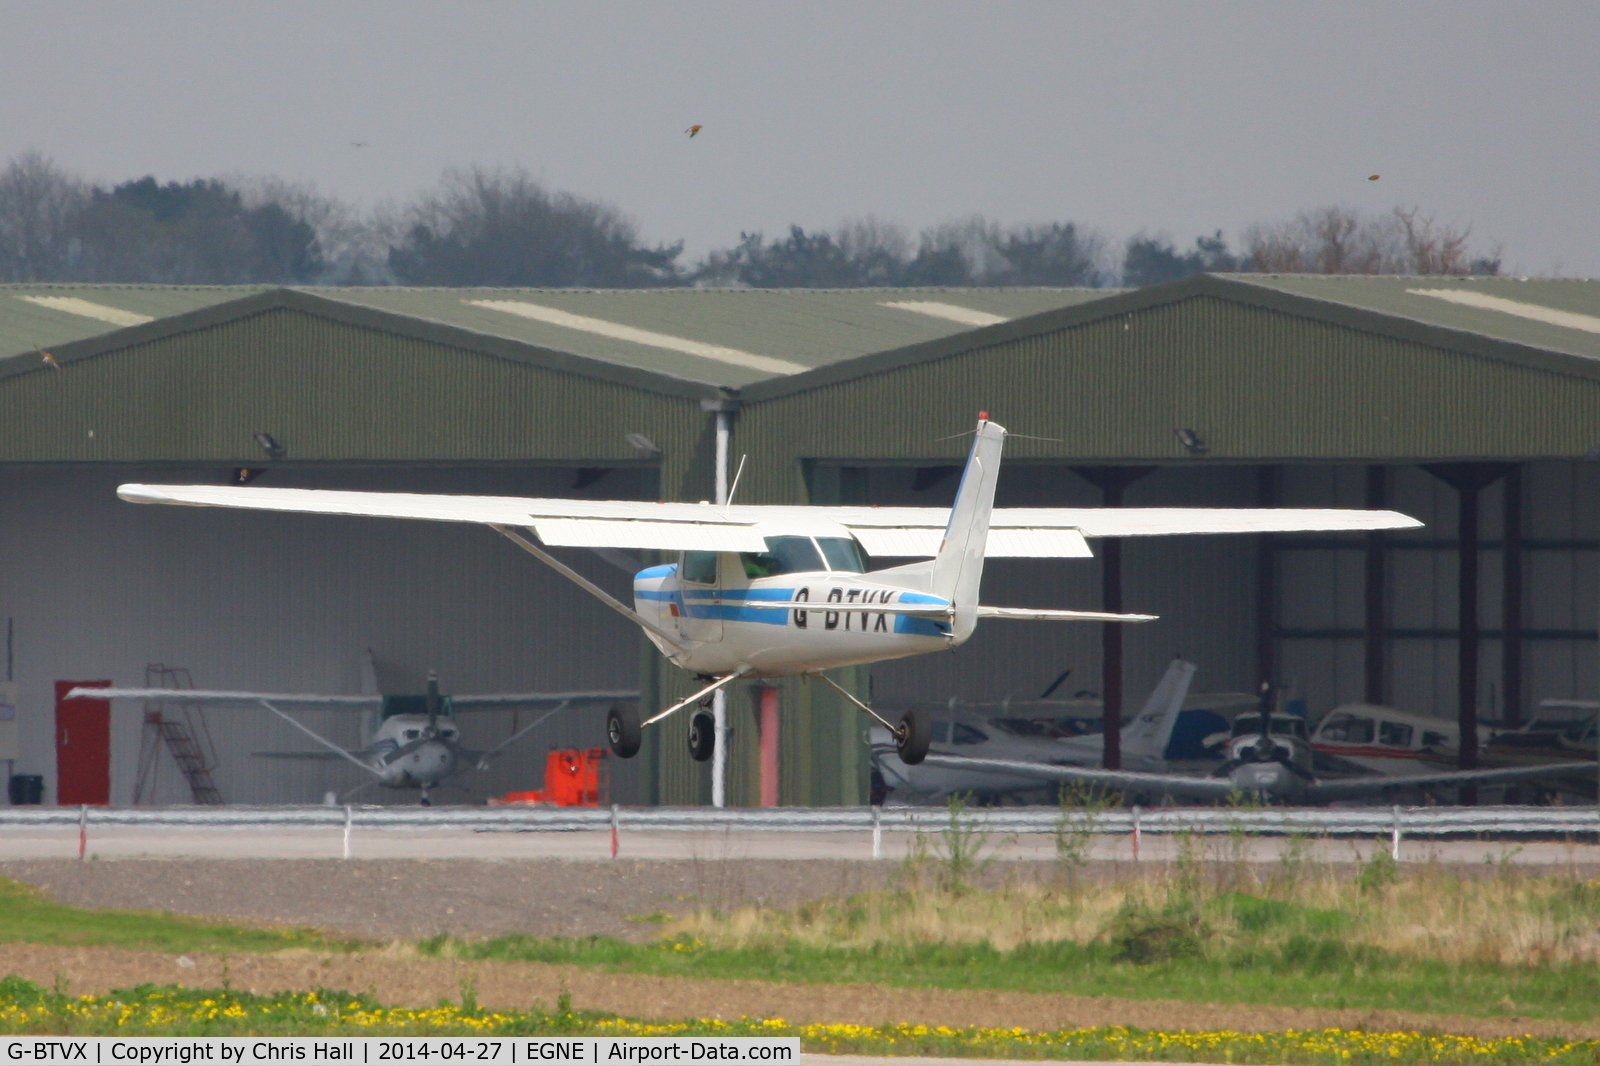 G-BTVX, 1979 Cessna 152 C/N 152-83375, Flight Centre 2010 Ltd